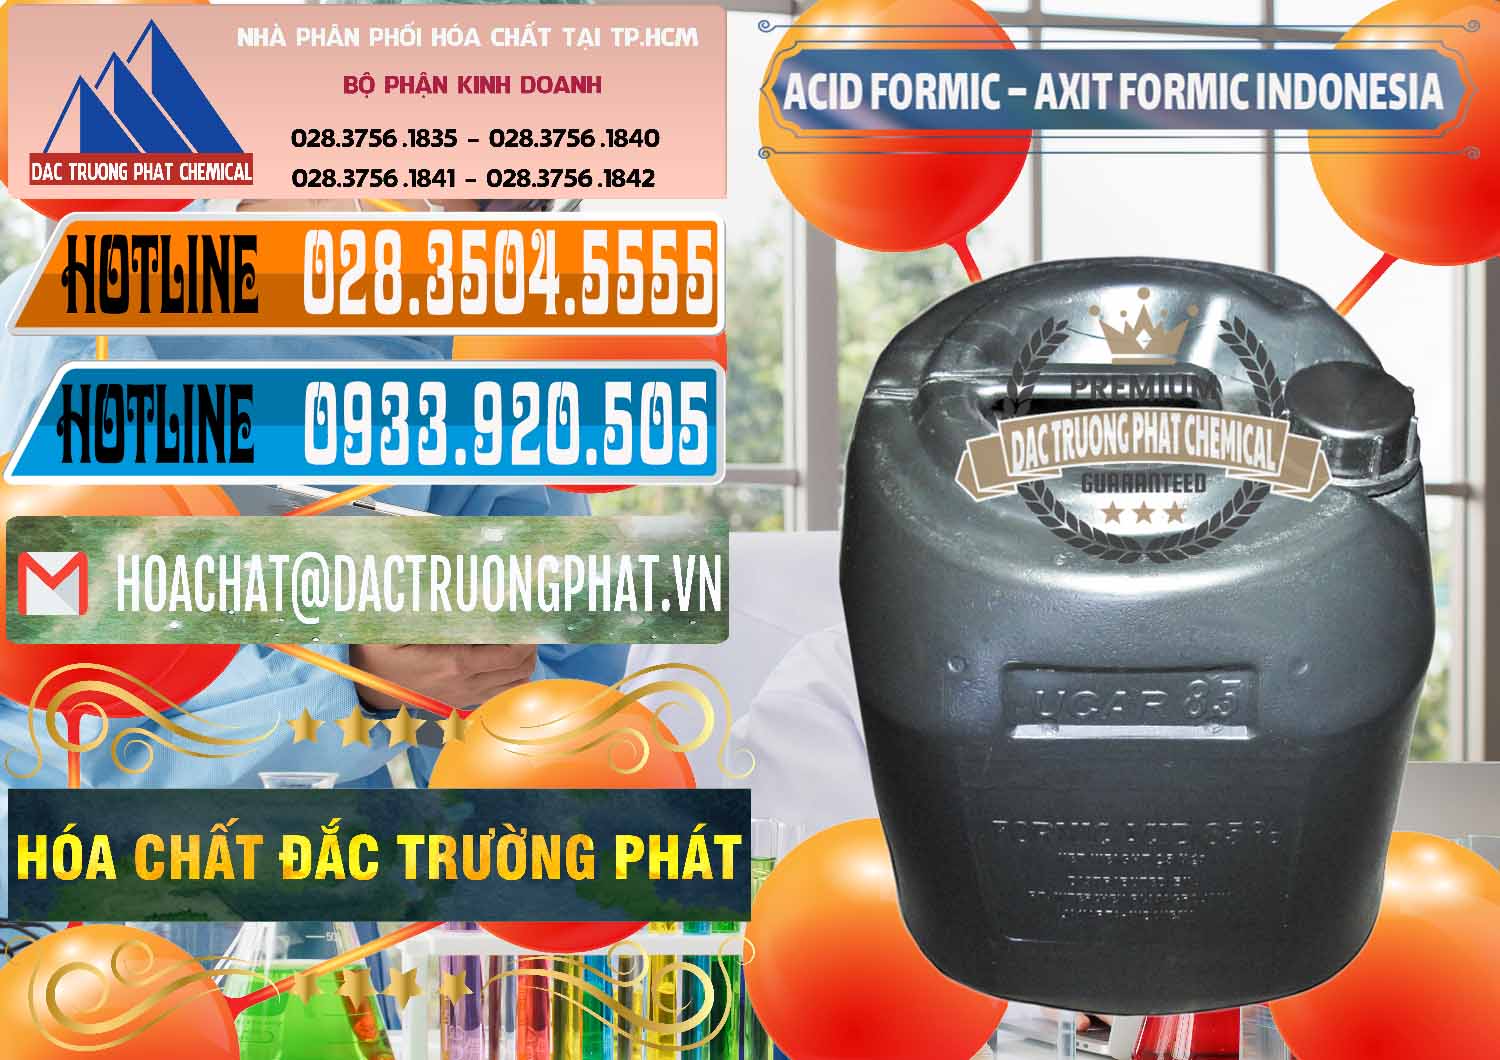 Công ty bán & cung ứng Acid Formic - Axit Formic Indonesia - 0026 - Công ty bán và phân phối hóa chất tại TP.HCM - stmp.net